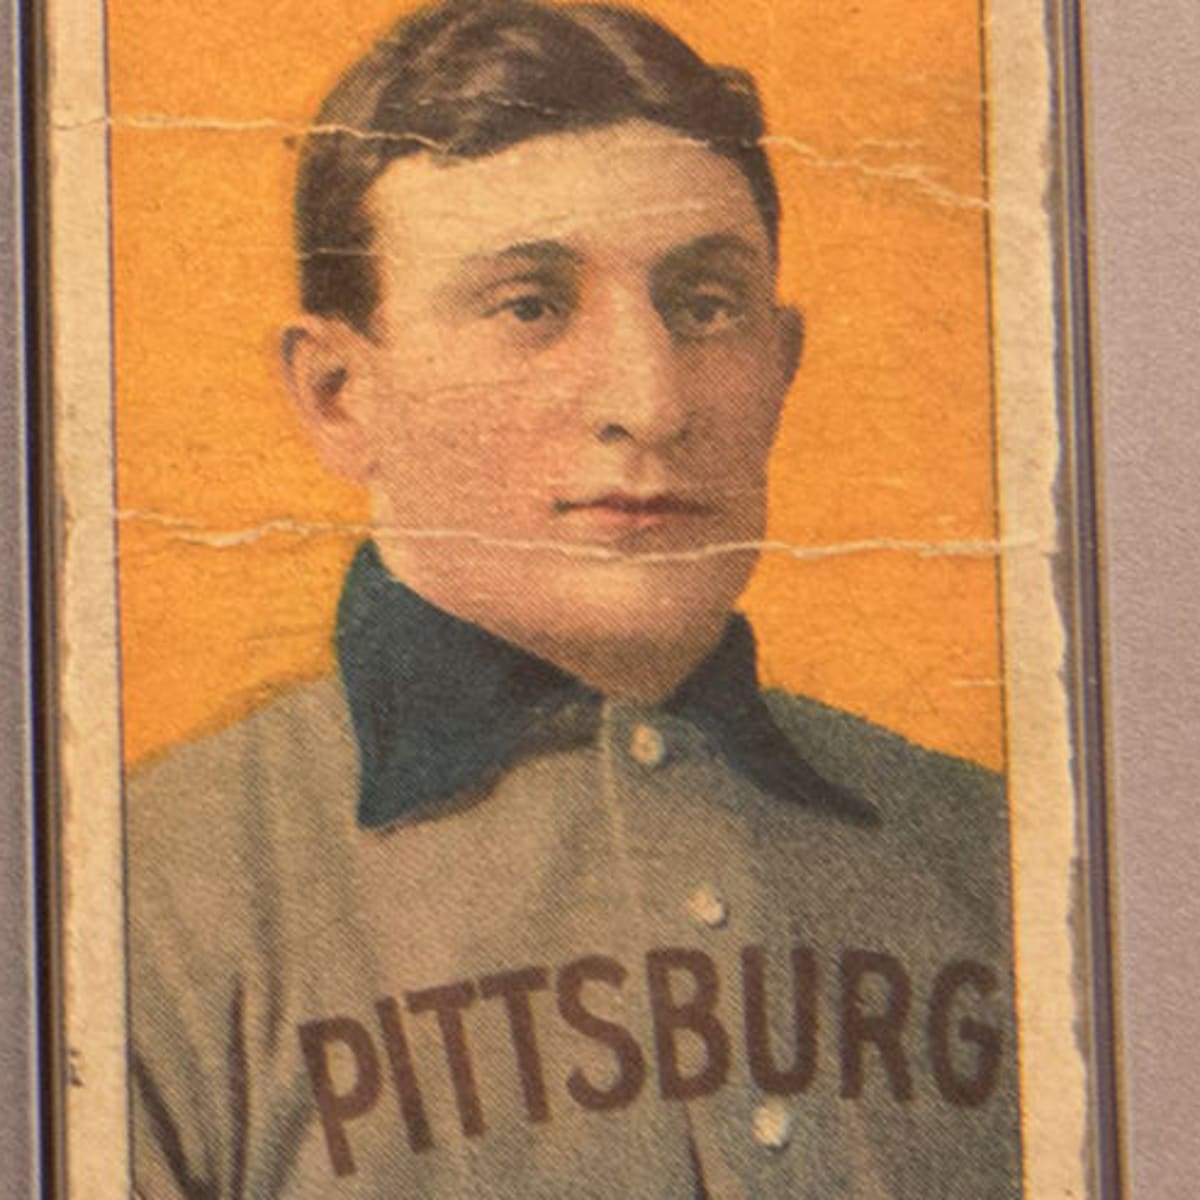 Rare Honus Wagner baseball card sells for record $6.6 million 